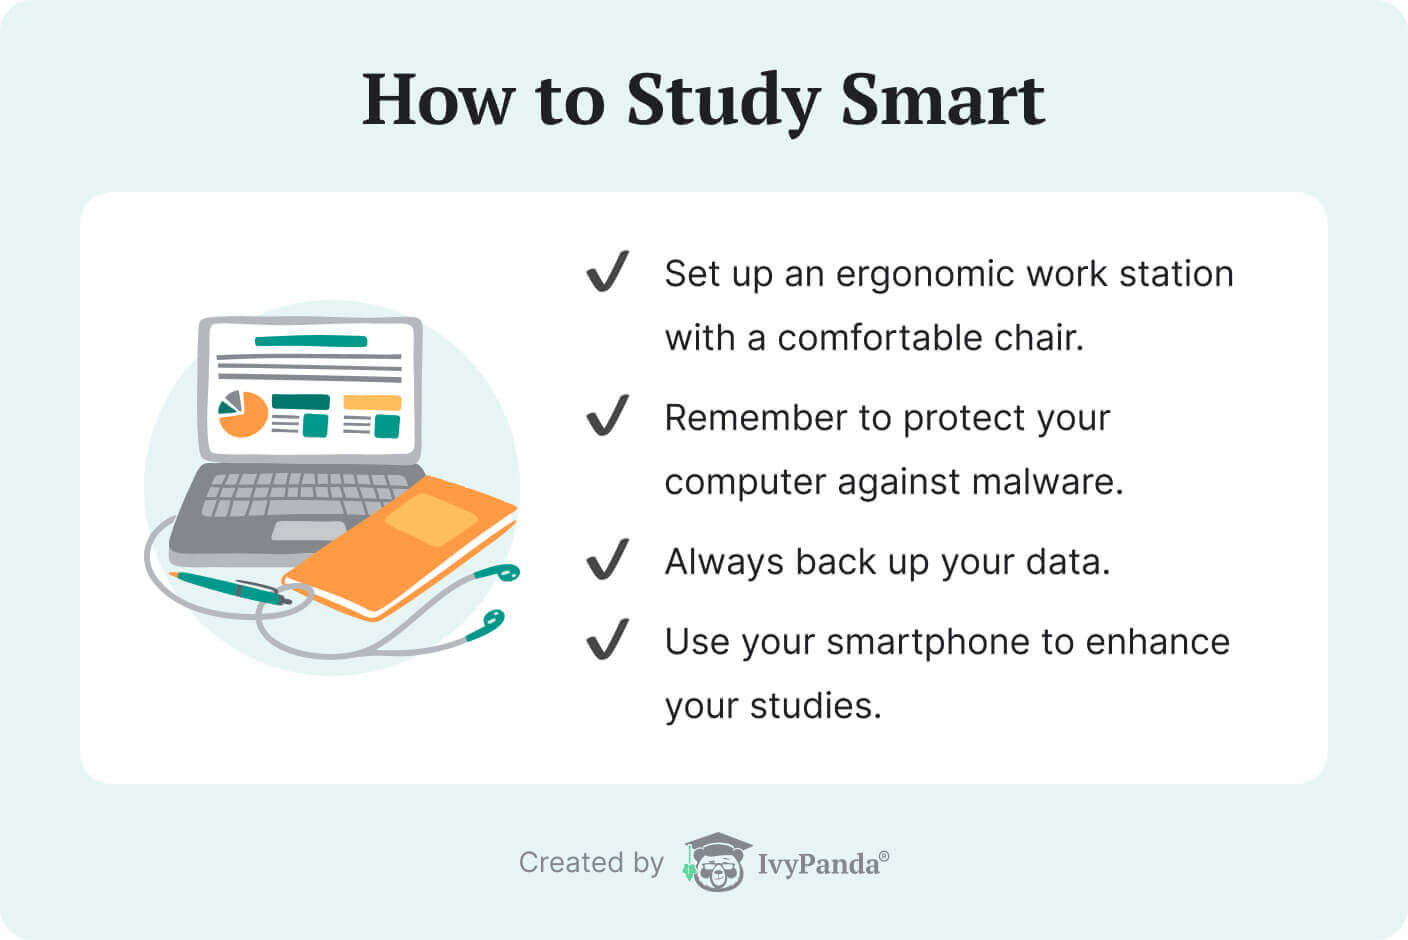 La imagen enumera consejos para estudiar de manera inteligente en la universidad.